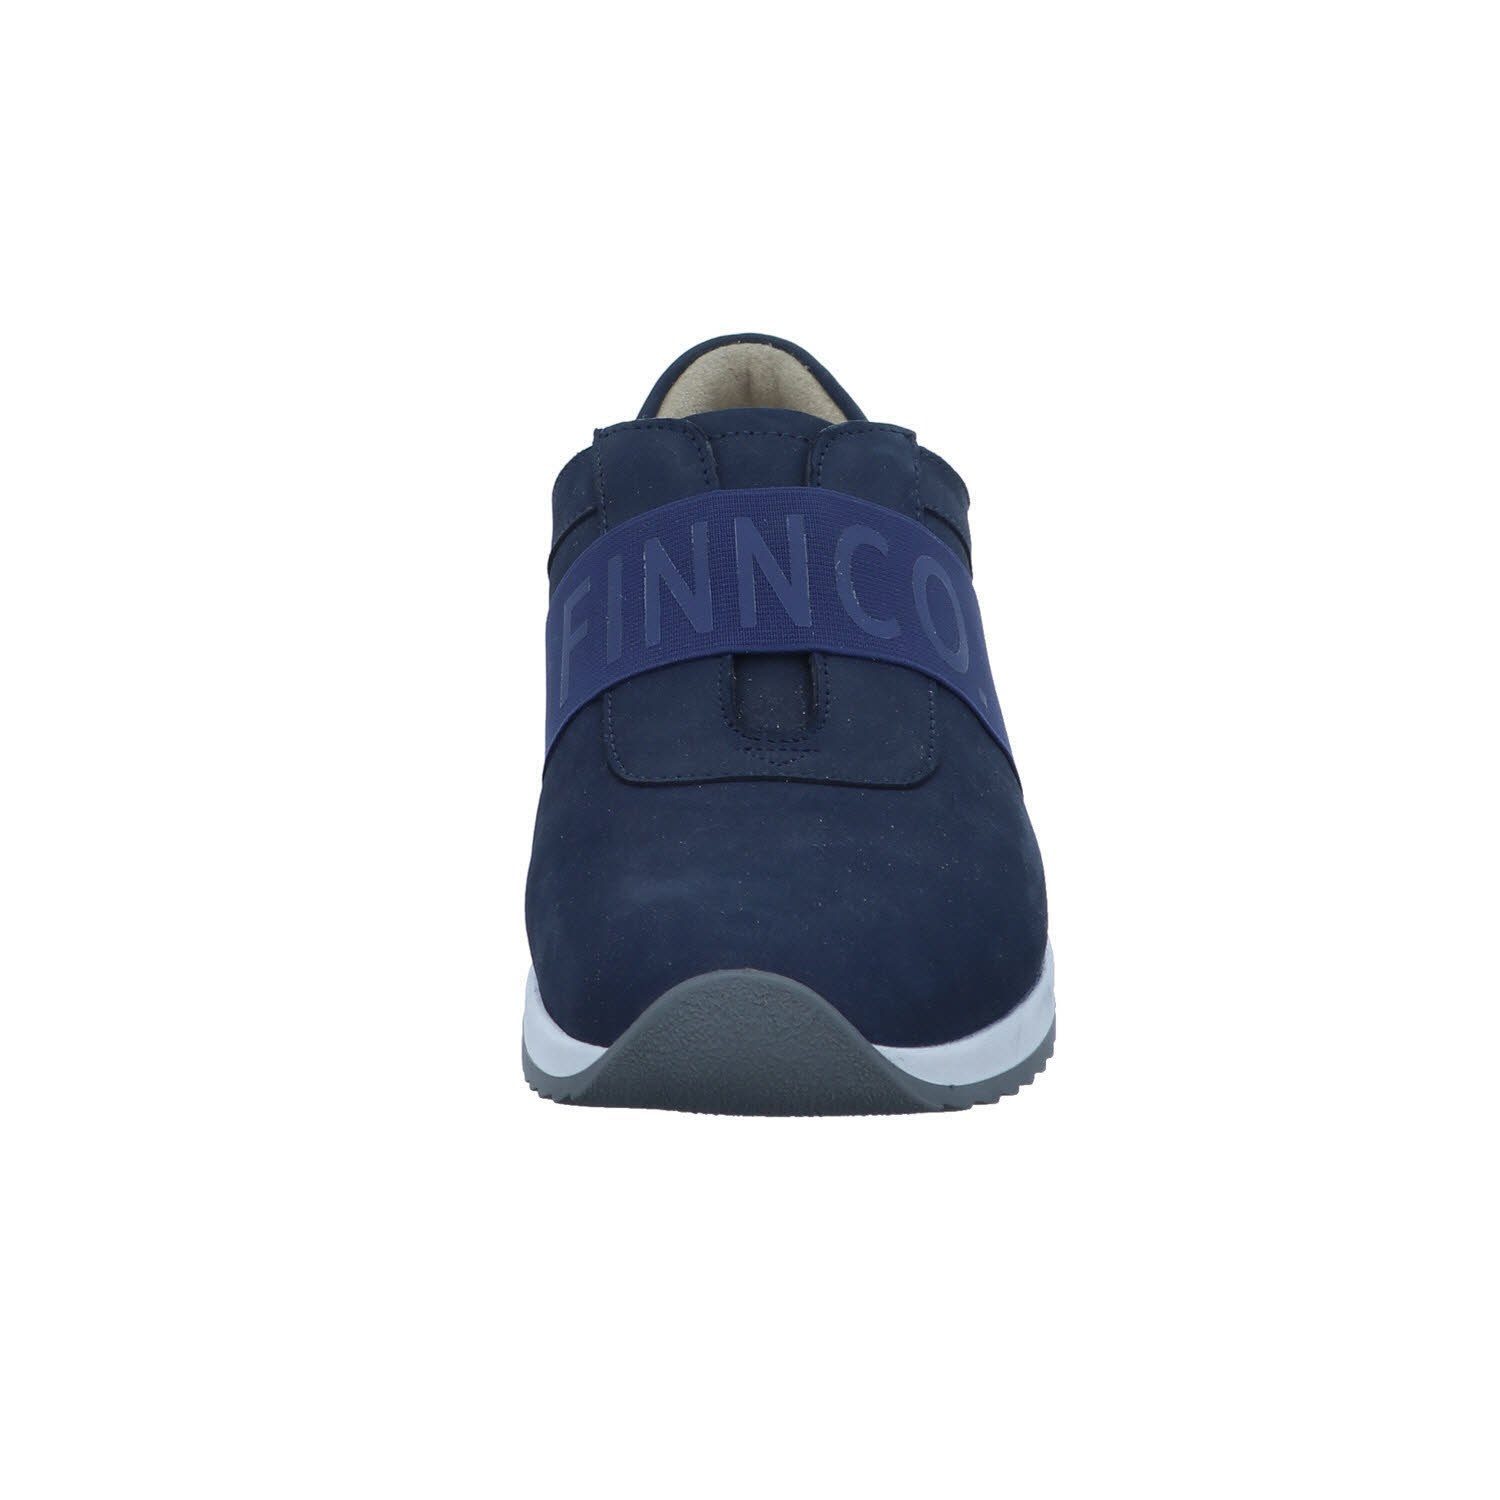 Comfort Sneaker Finn